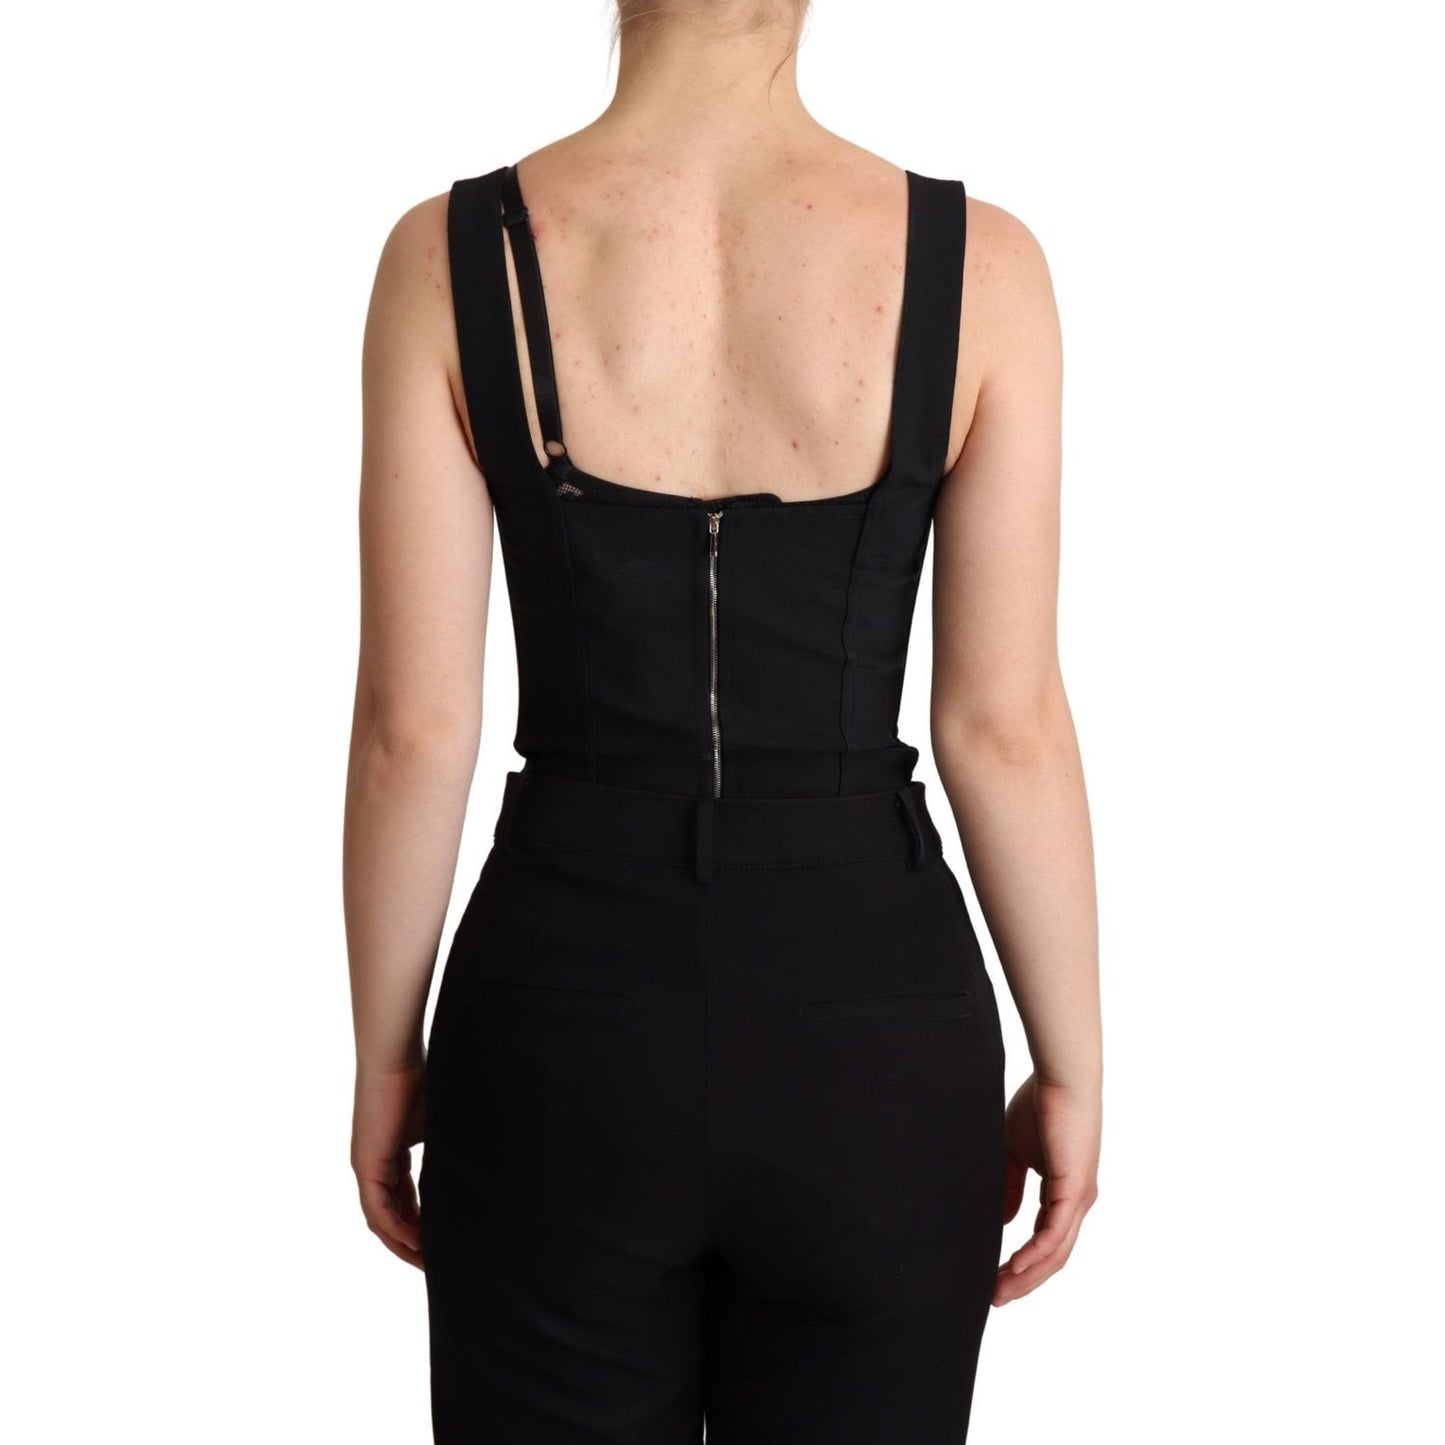 Dolce & Gabbana | Black Floral Lace Bodysuit Hot Pants Dress Jeans & Pants | McRichard Designer Brands